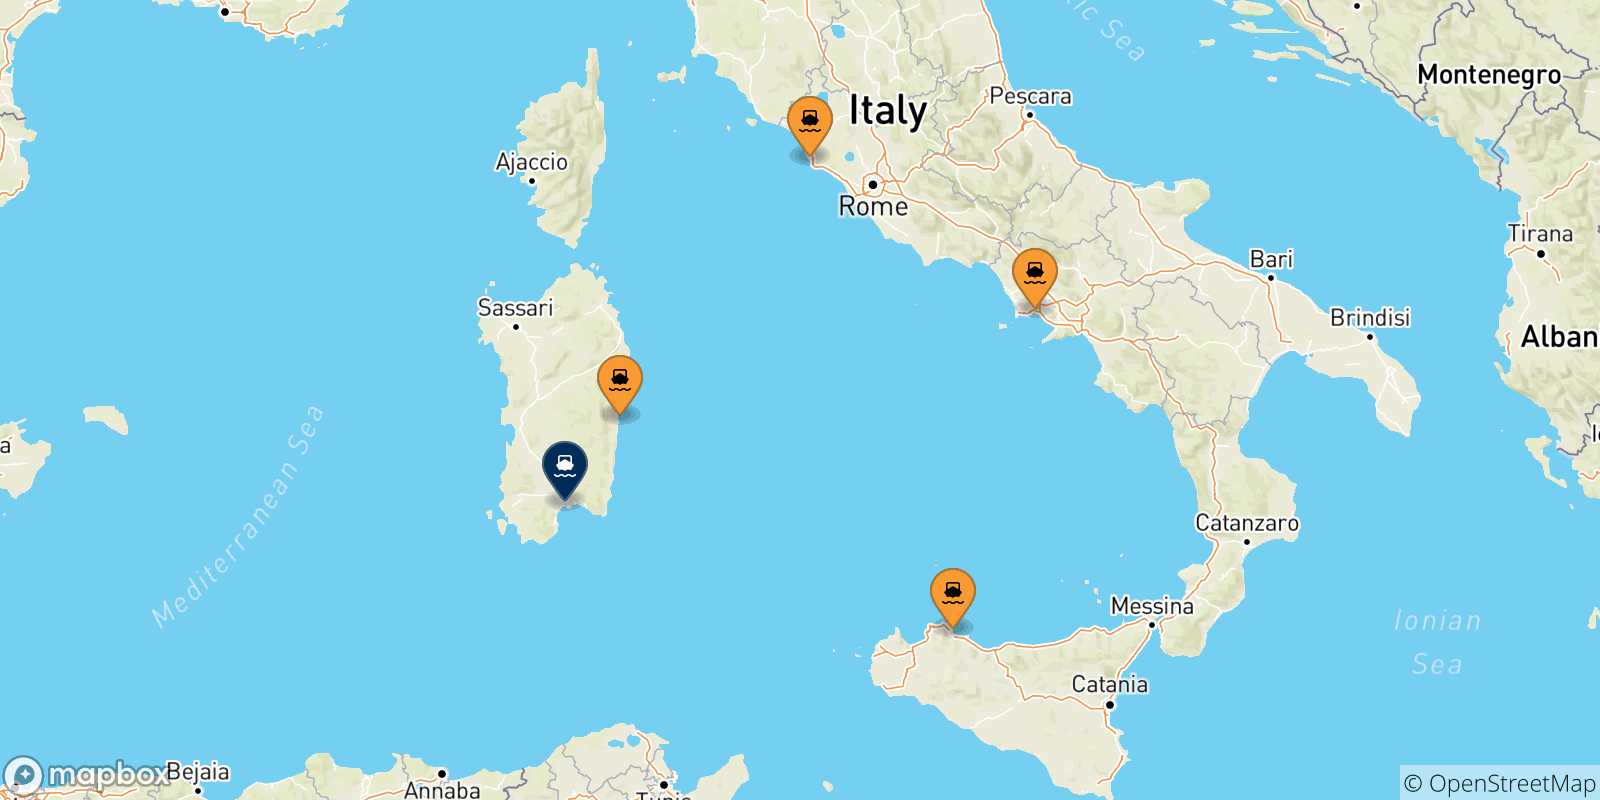 Mappa delle possibili rotte tra l'Italia e Cagliari